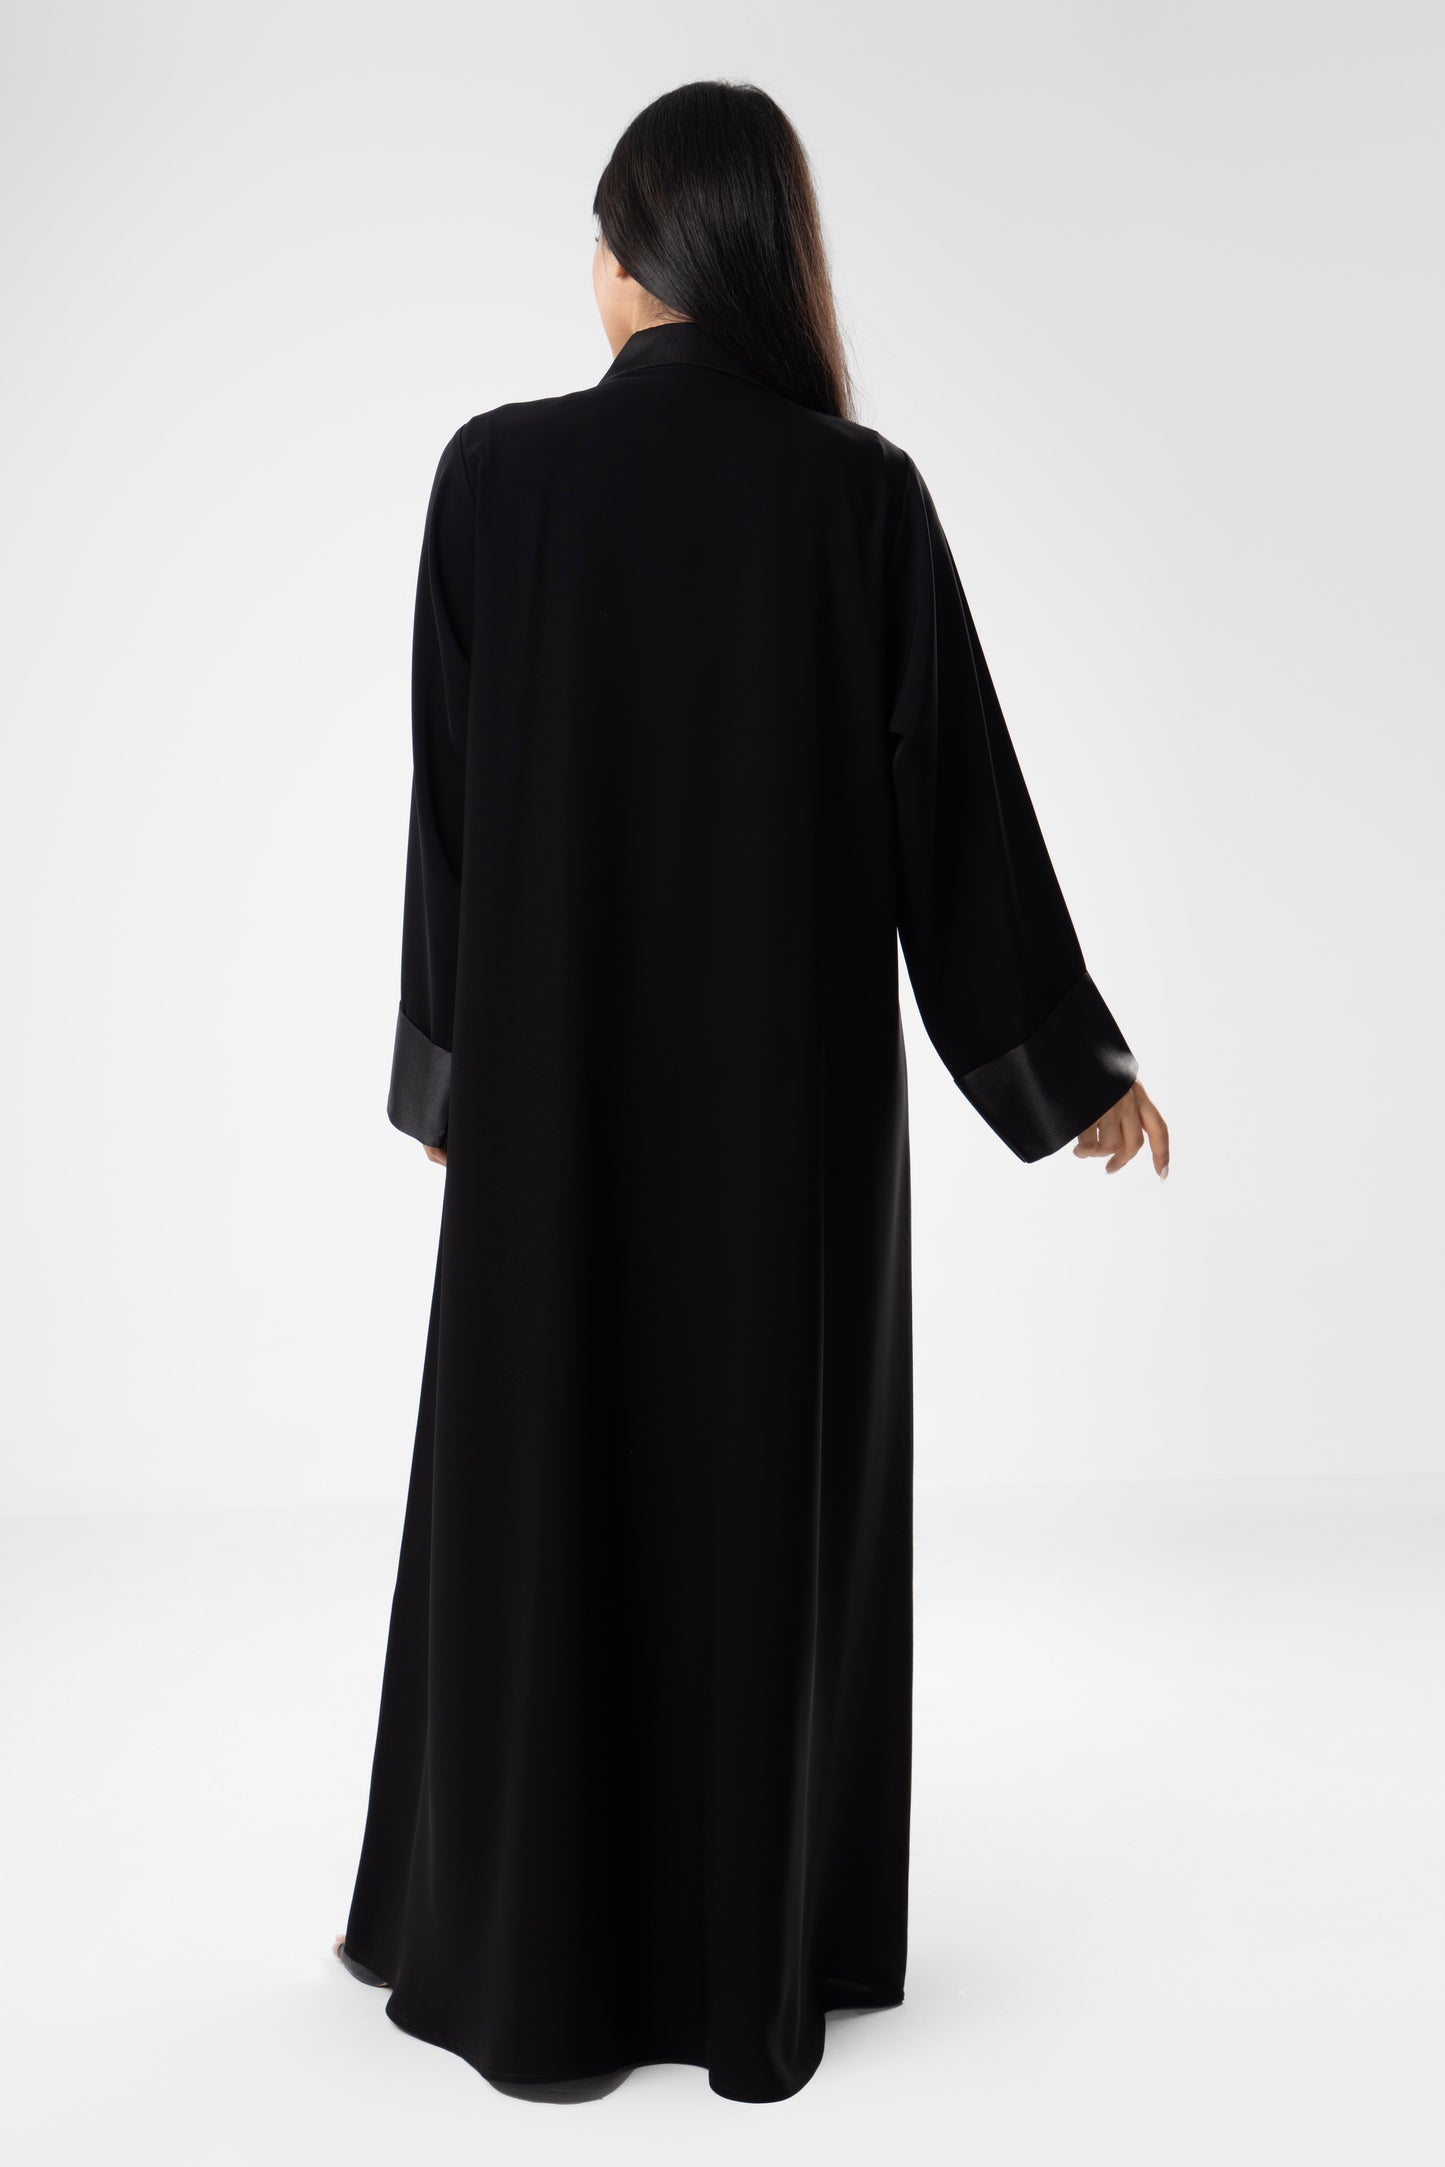 Black Jacket Abaya Modest